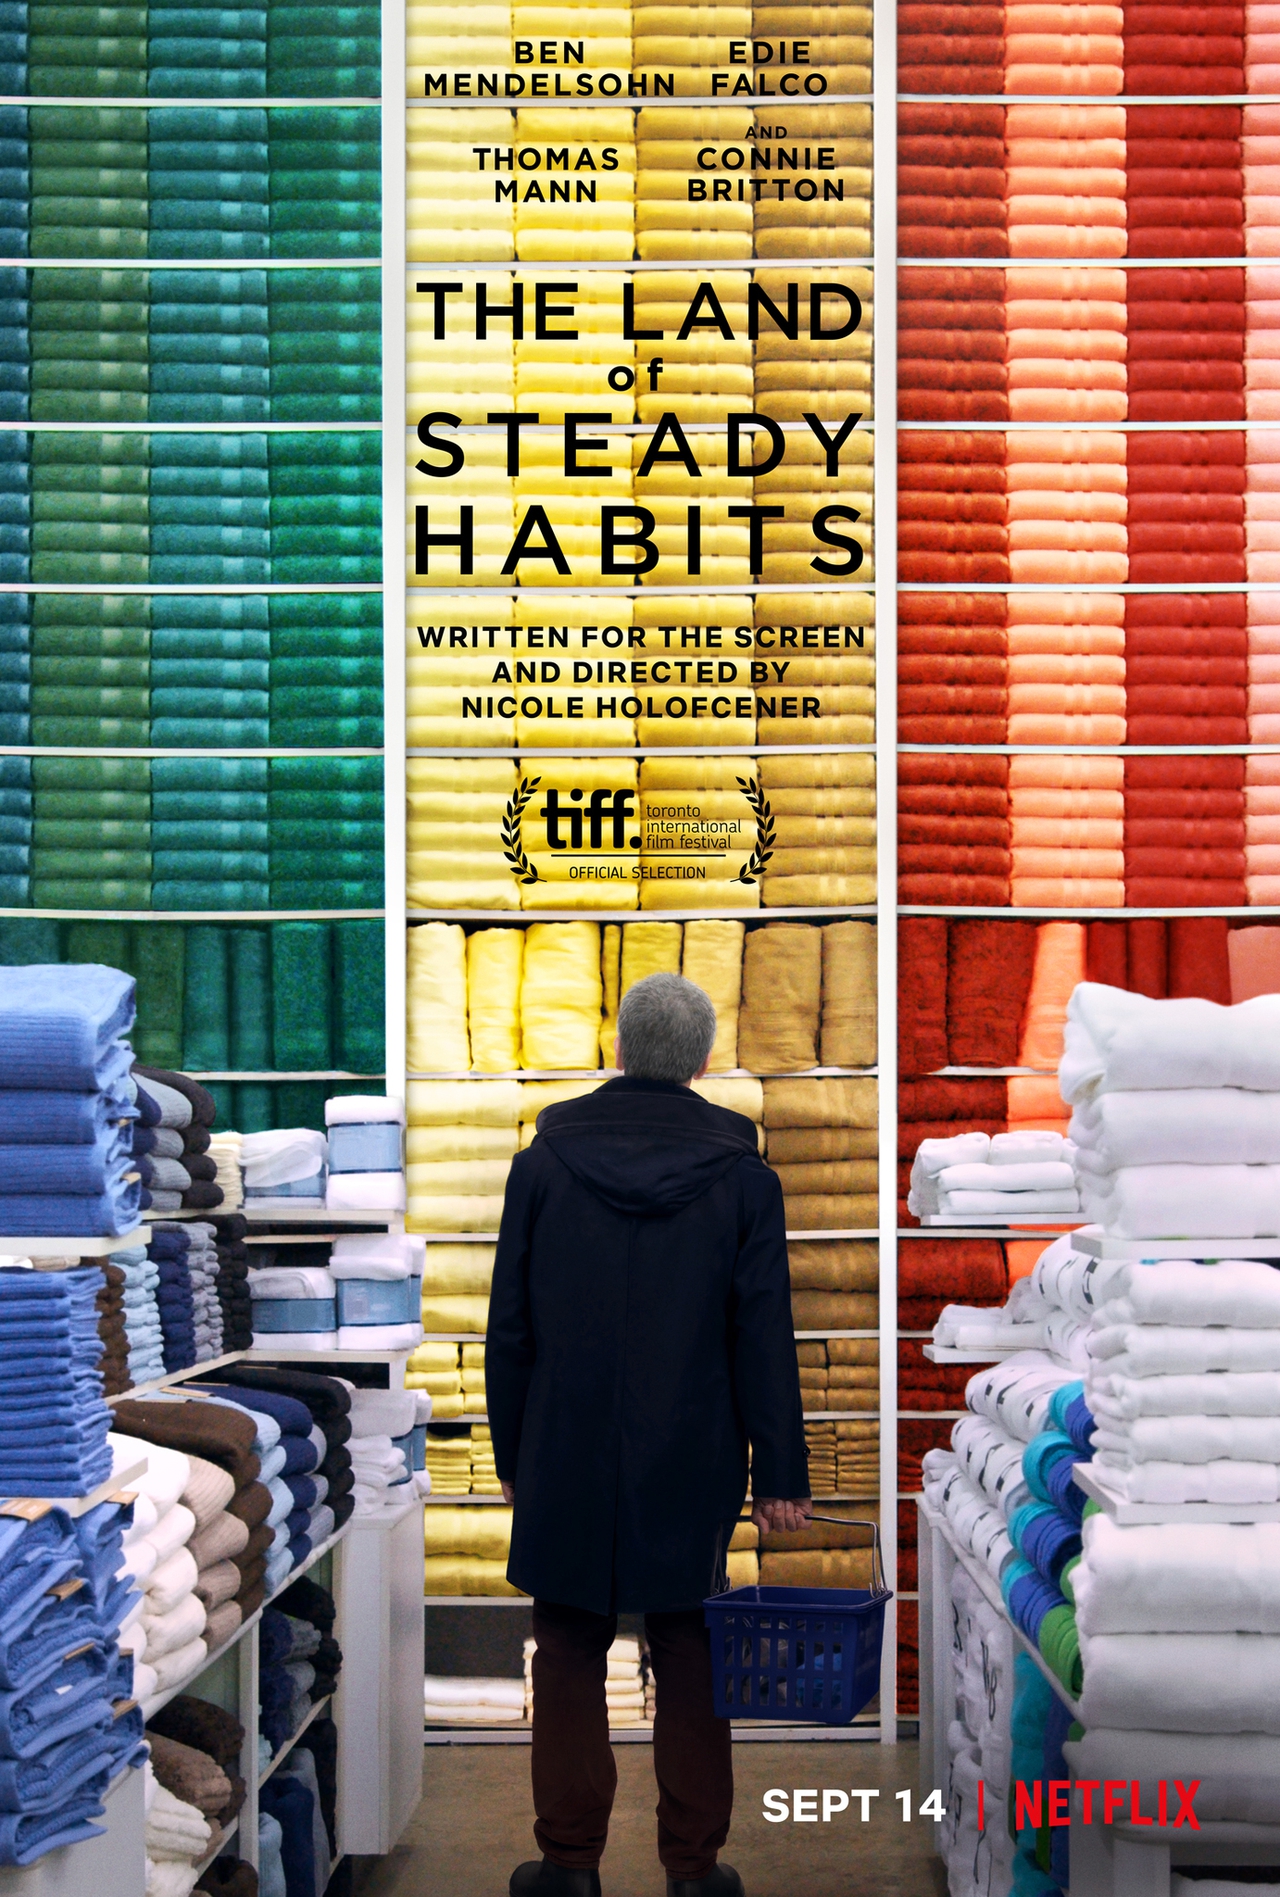 بن مندلسون در صحنه فیلم سینمایی The Land of Steady Habits